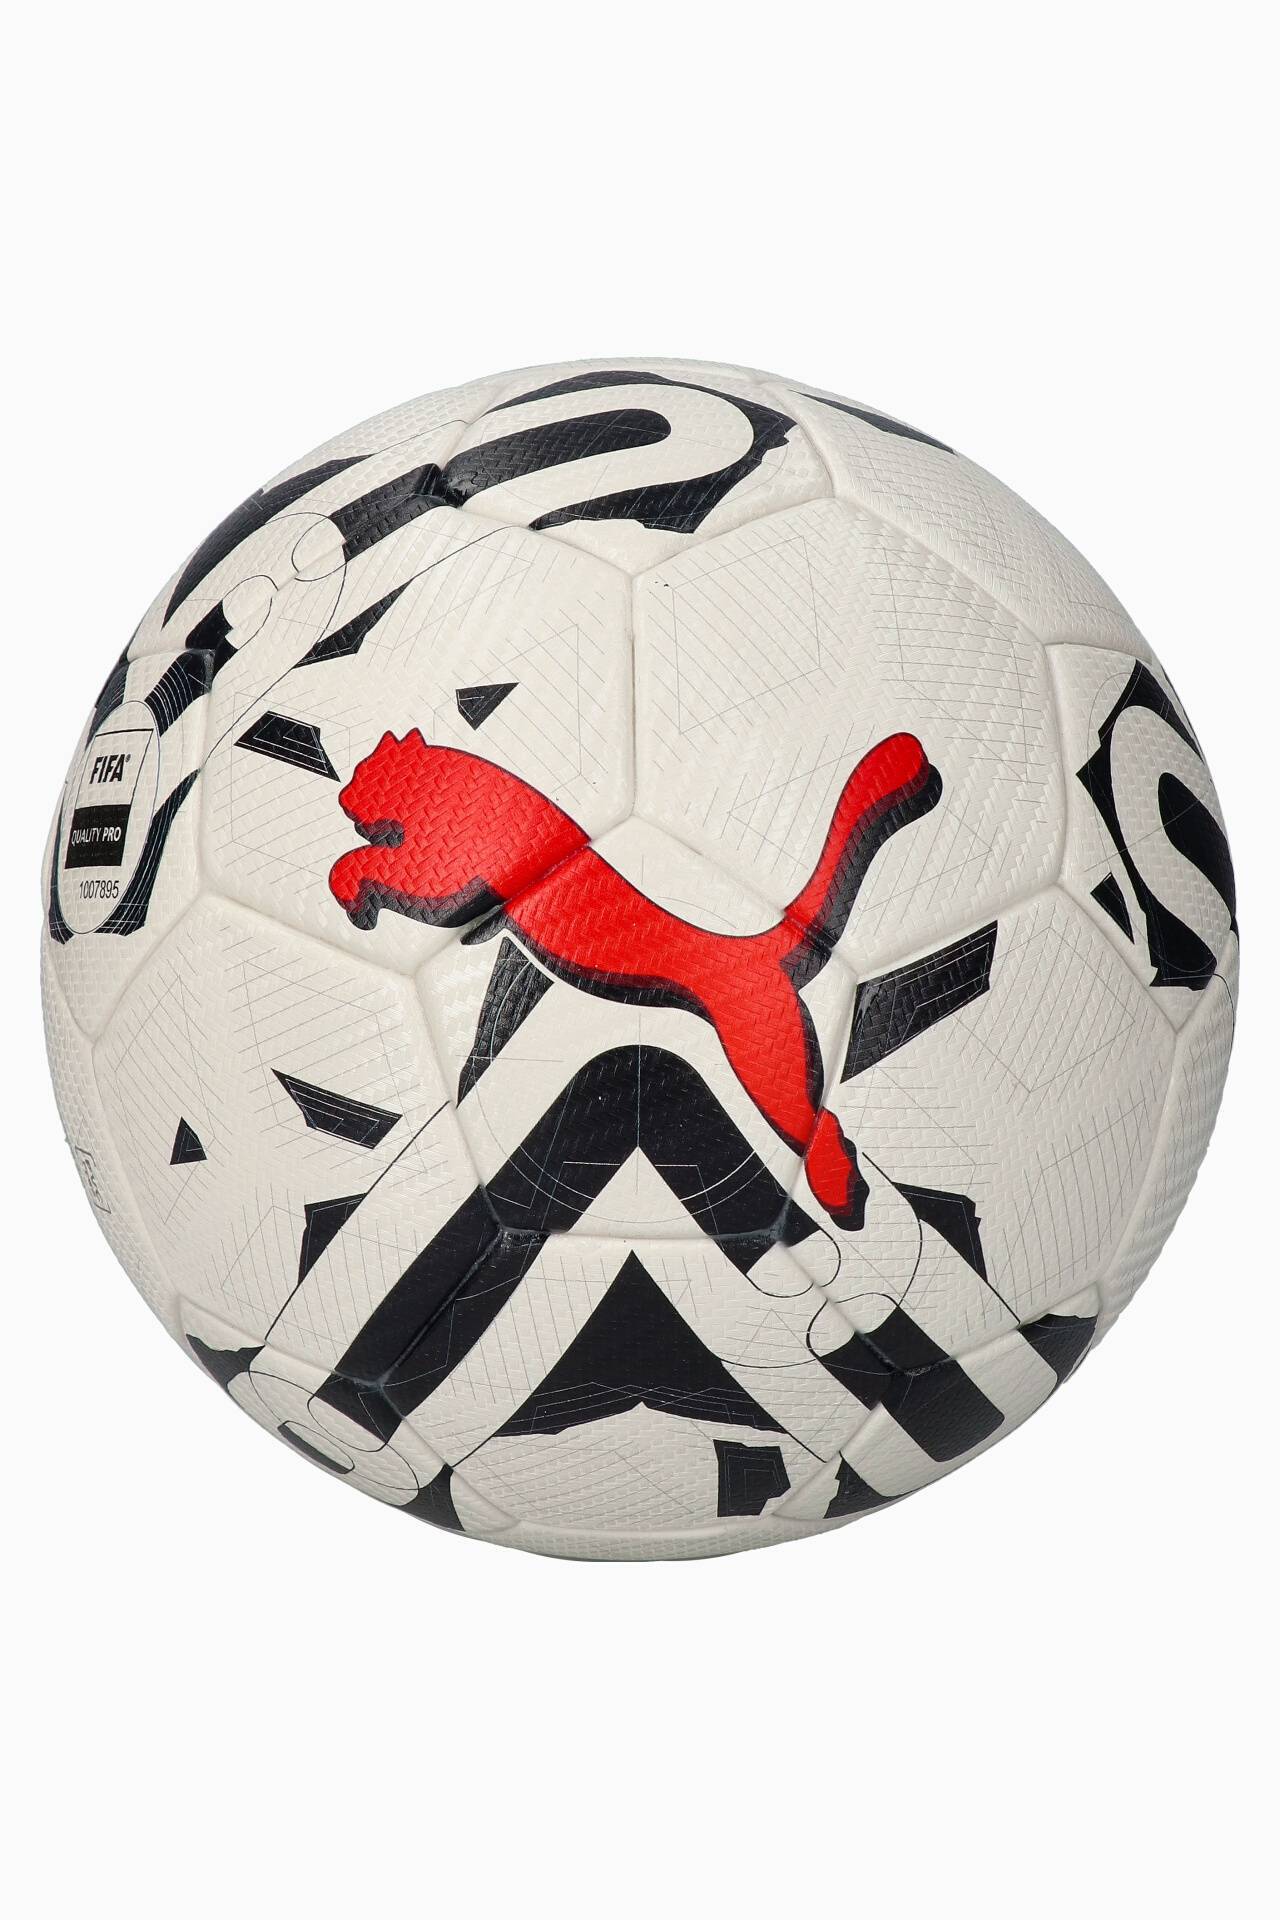 ALPHAKEEPERS мяч футбольный Stealth FIFA quality Pro *5 3002. Мяч ФИФА 2023. Мяч Puma футбольный синий-белый-черный. Как сделать самодельный супер мяч ФИФА.